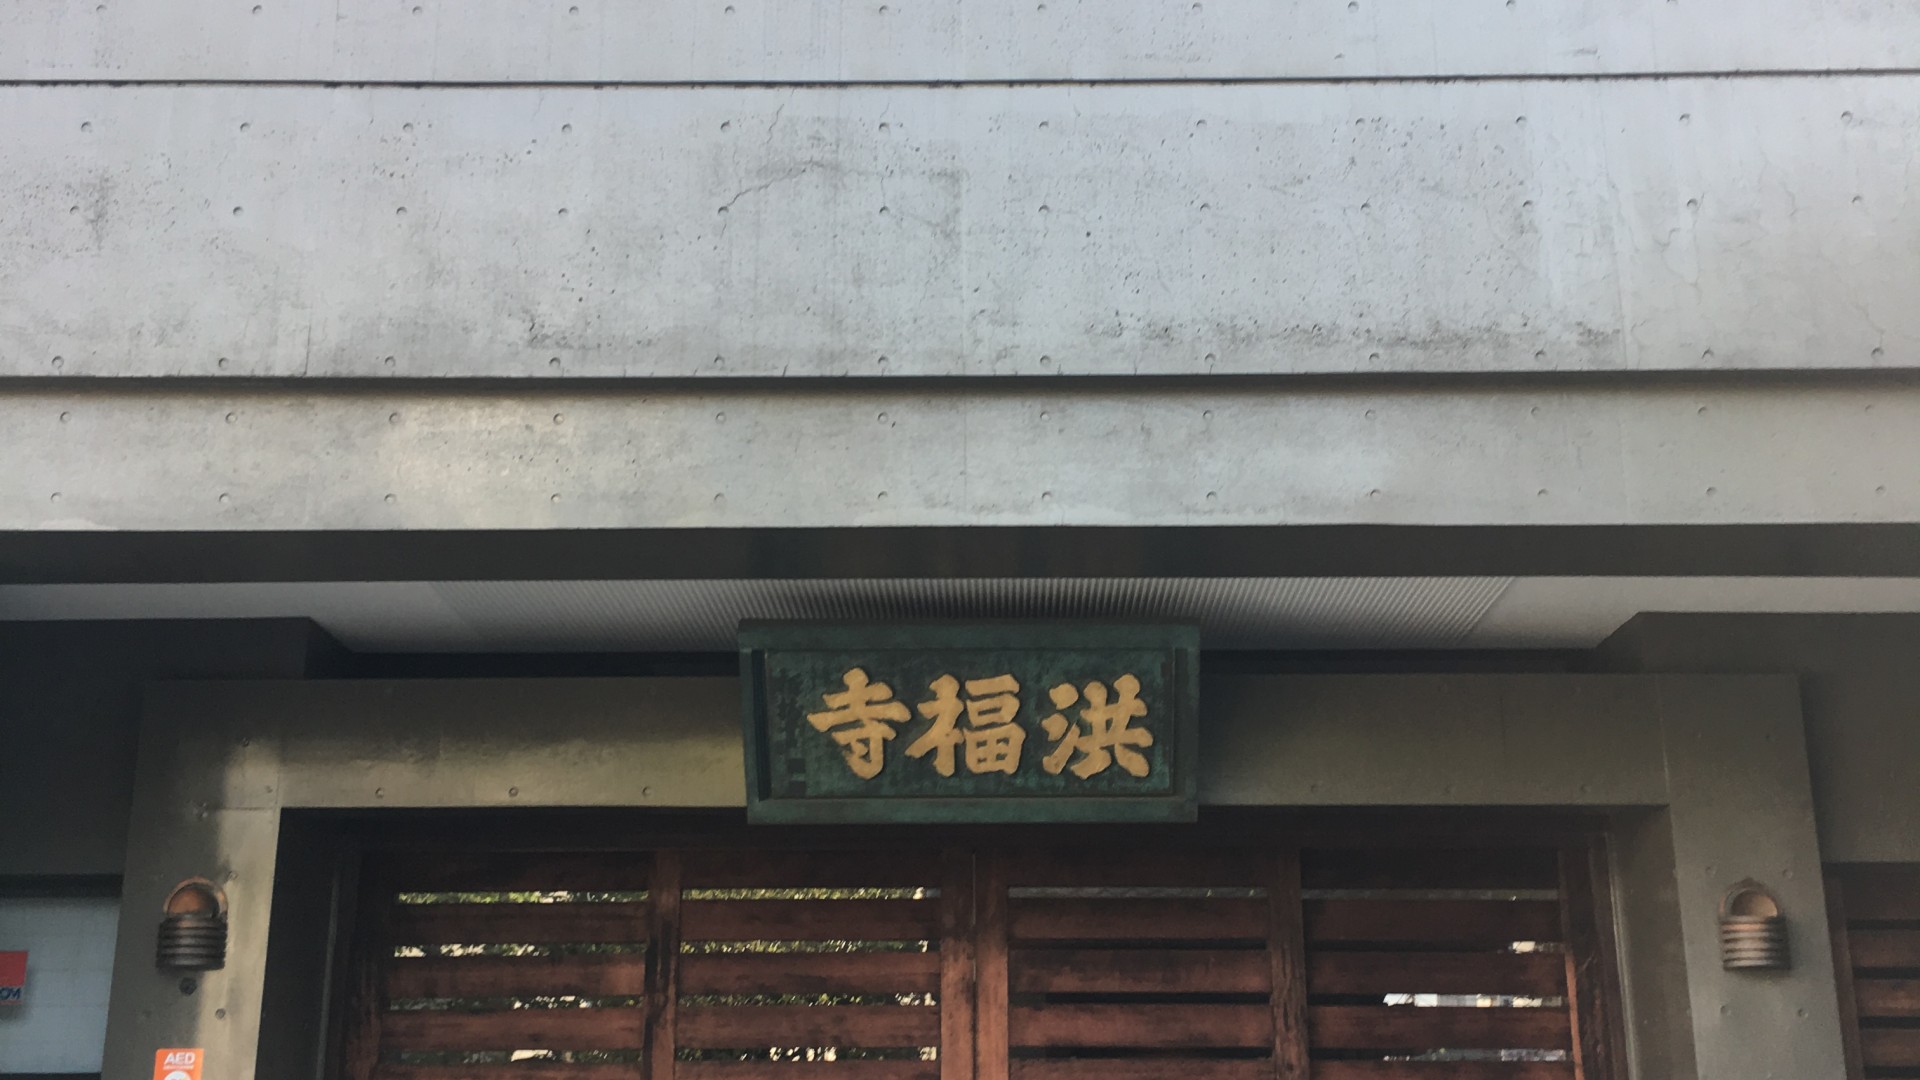 Kofuku ji Tempel